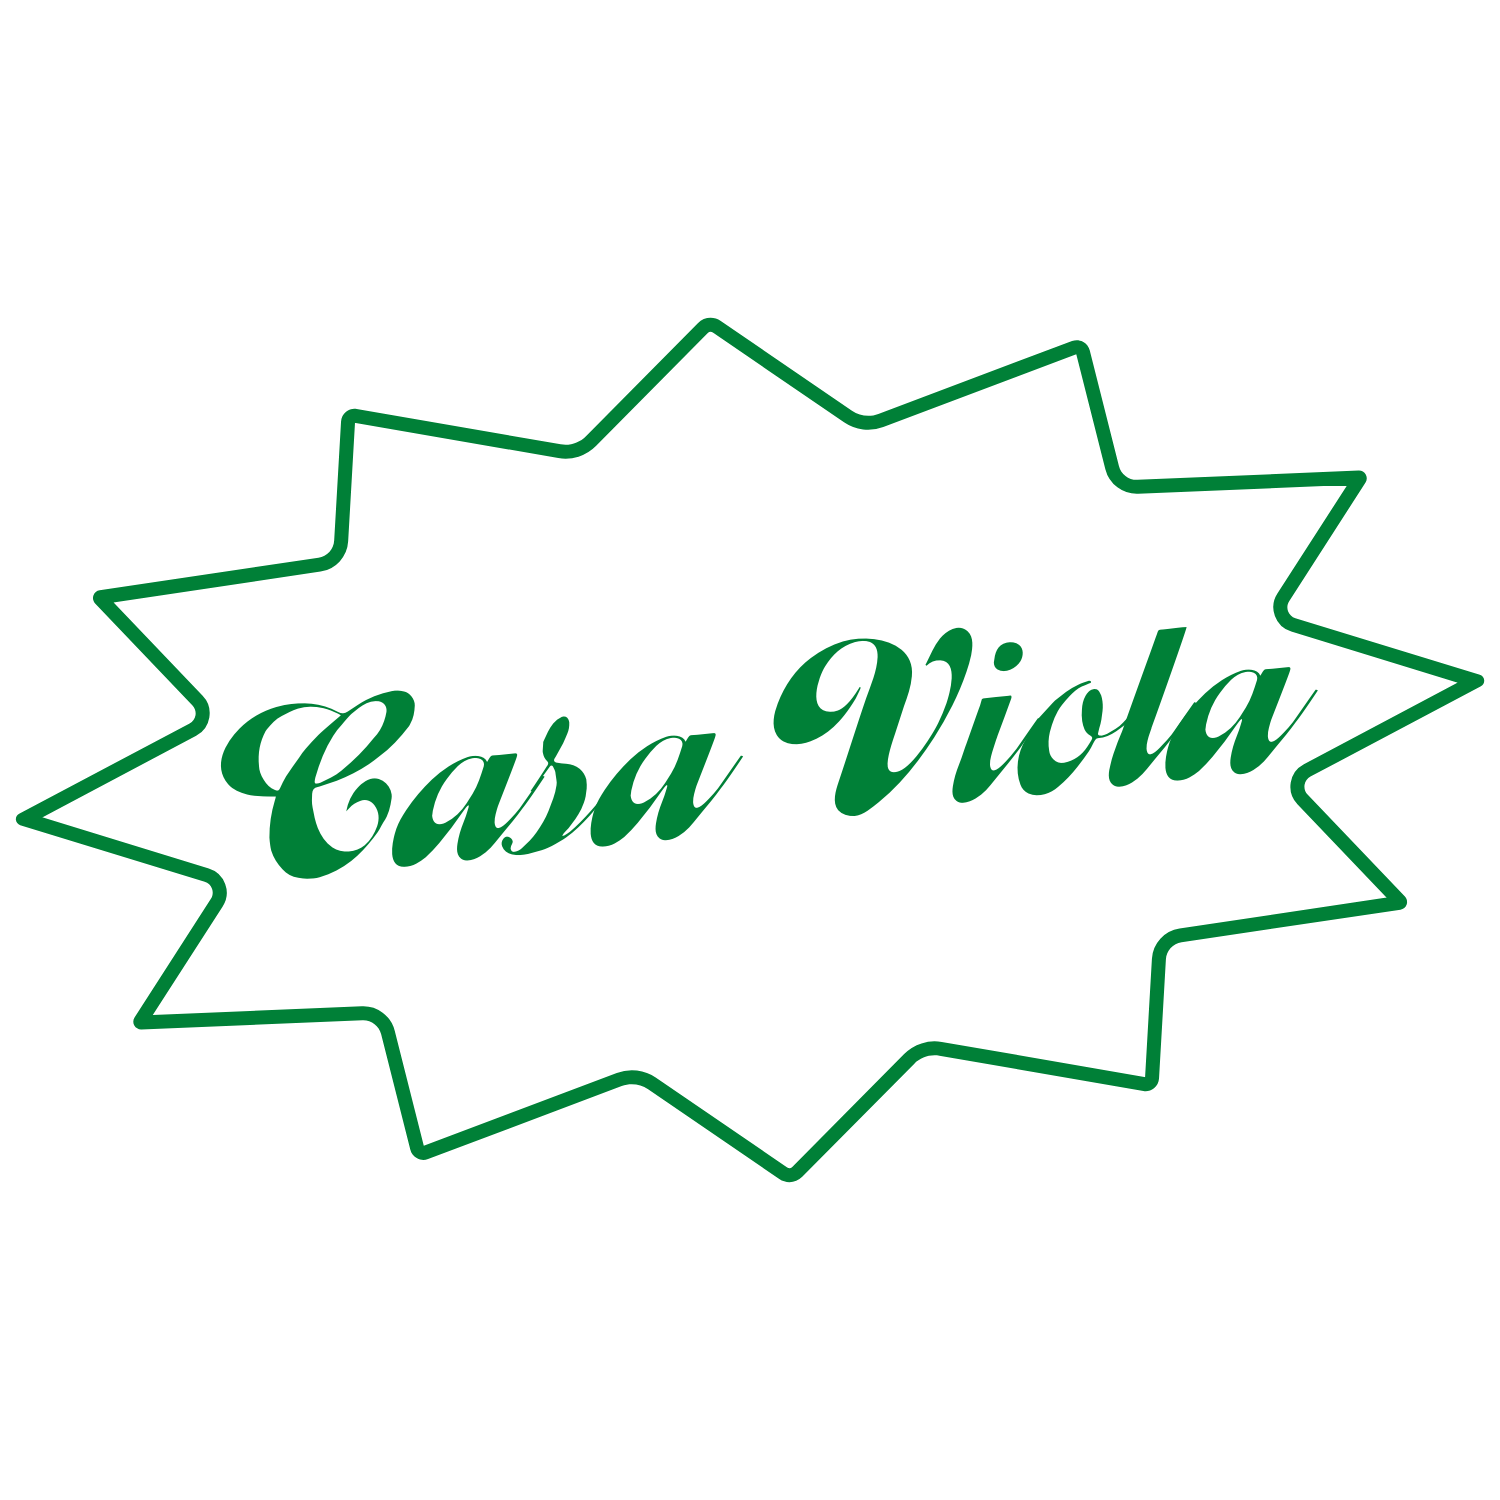 Lampe rose opaline et abat-jour plissé – Casa Viola